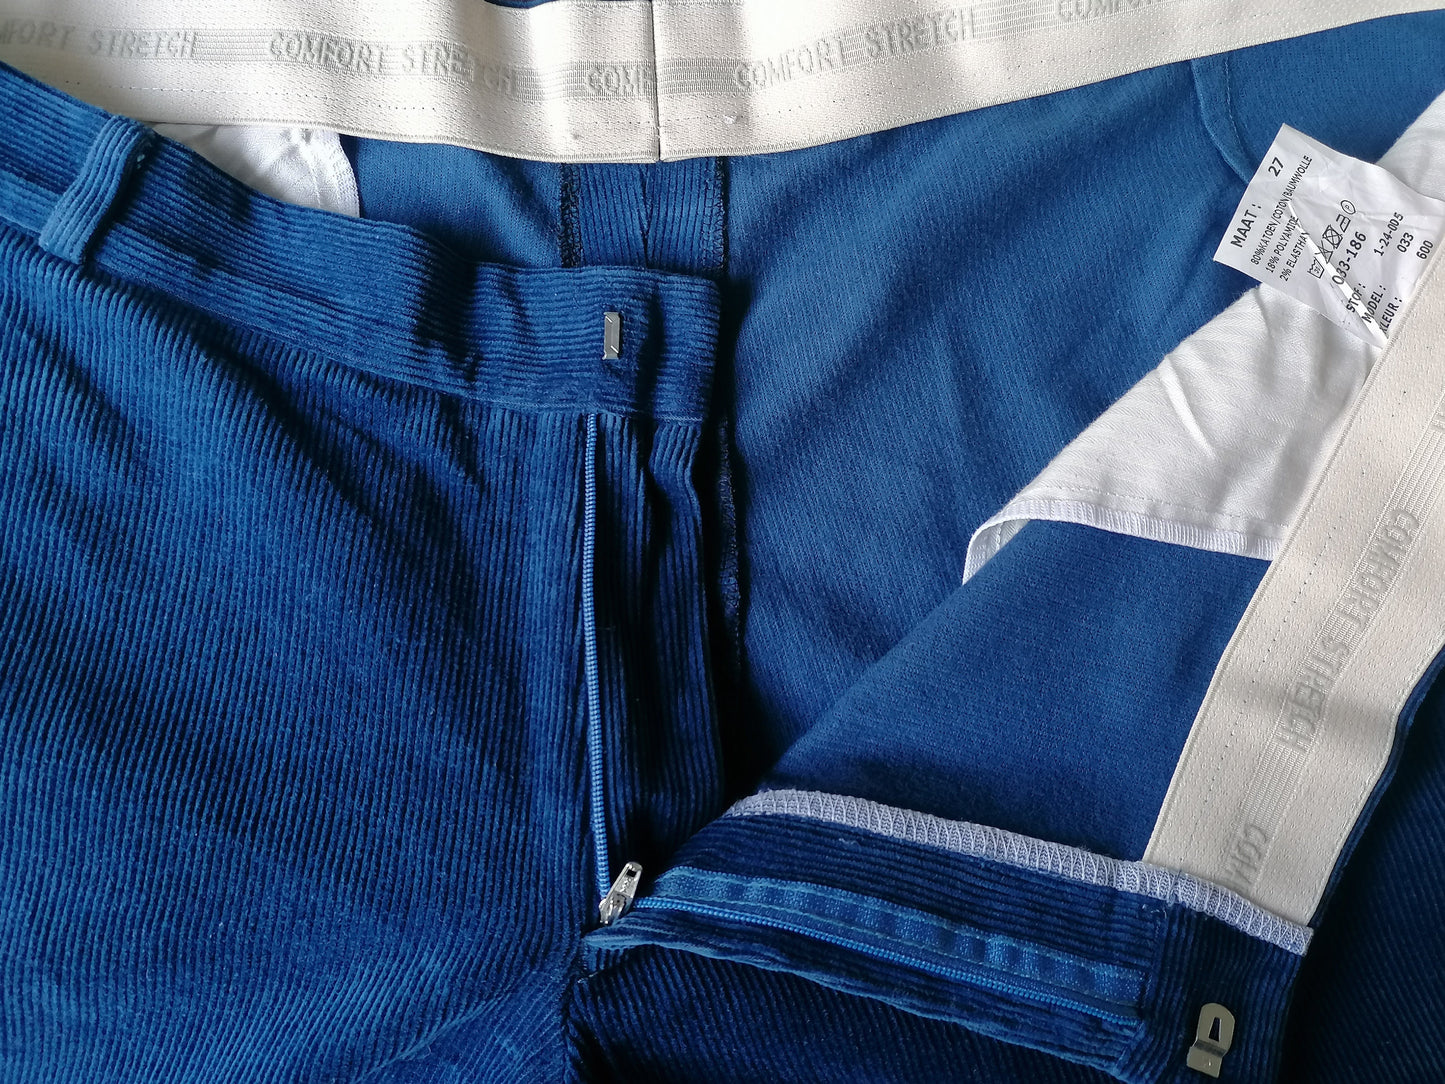 Comfort Stretch Rib broek / pantalon. Blauw gekleurd. Maat 27 (54/L)